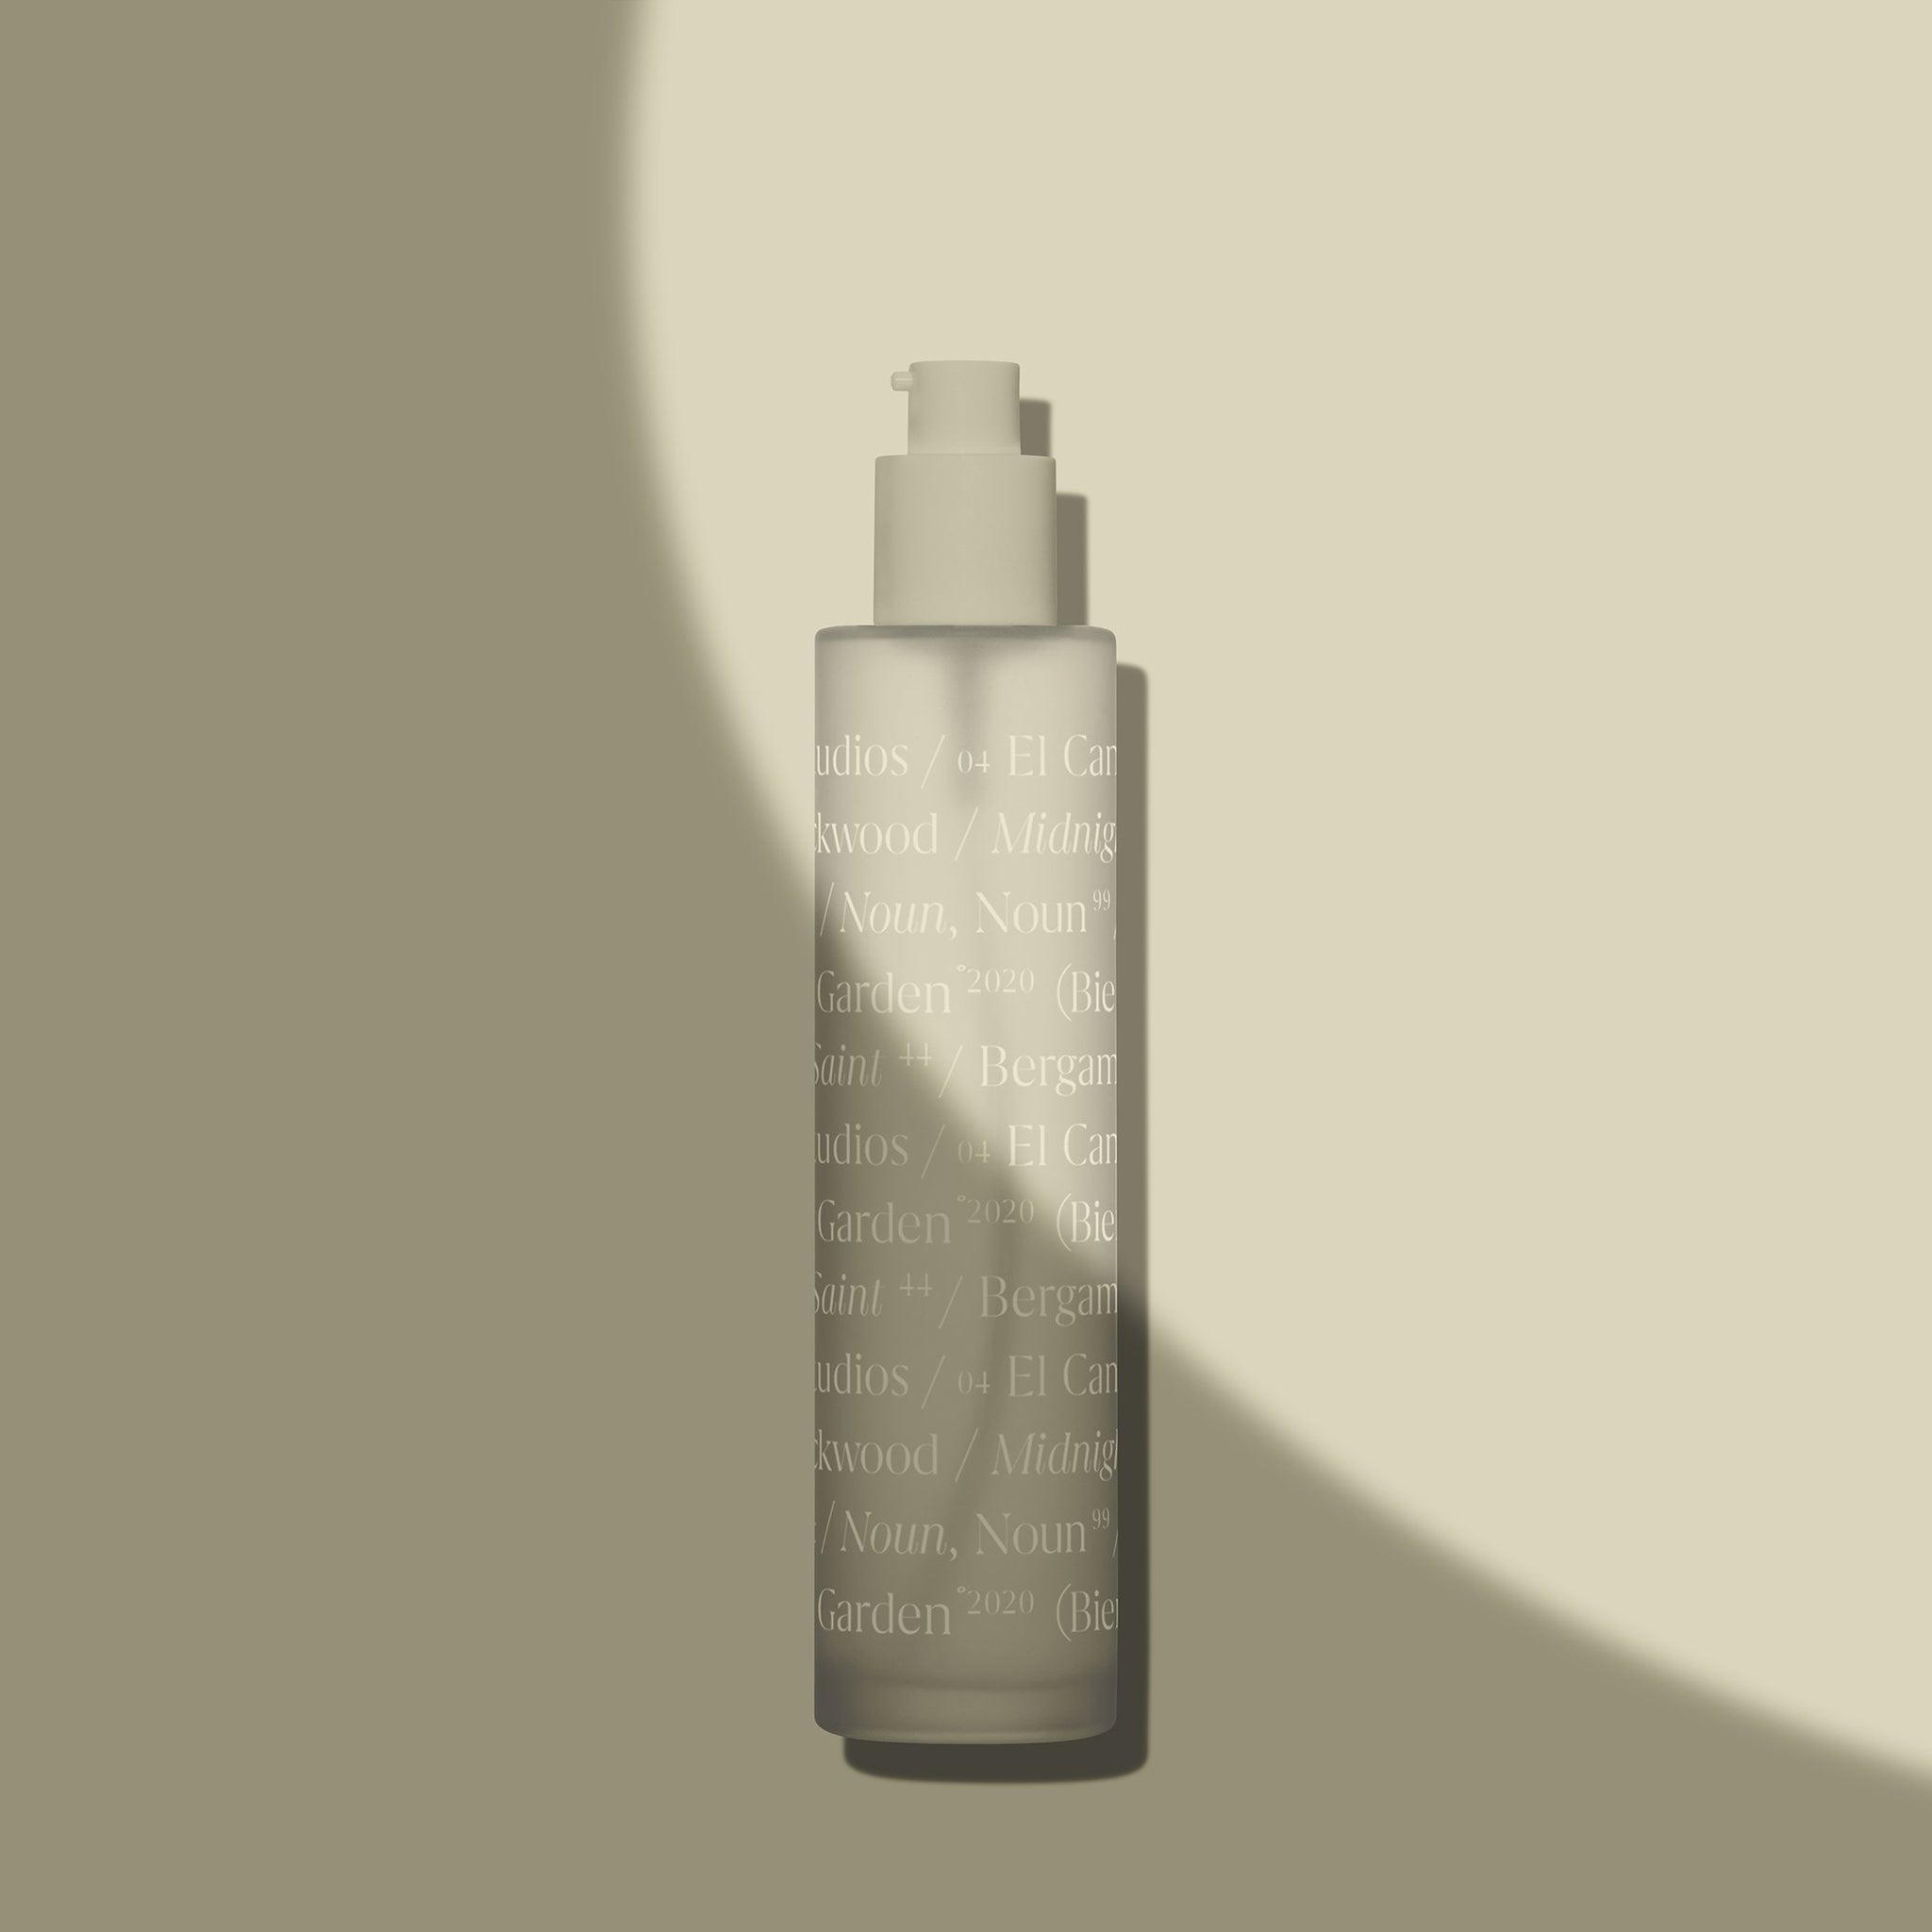 Frosted Glass Bottle Mockup - Copal Studio Packaging Mockups For Designers